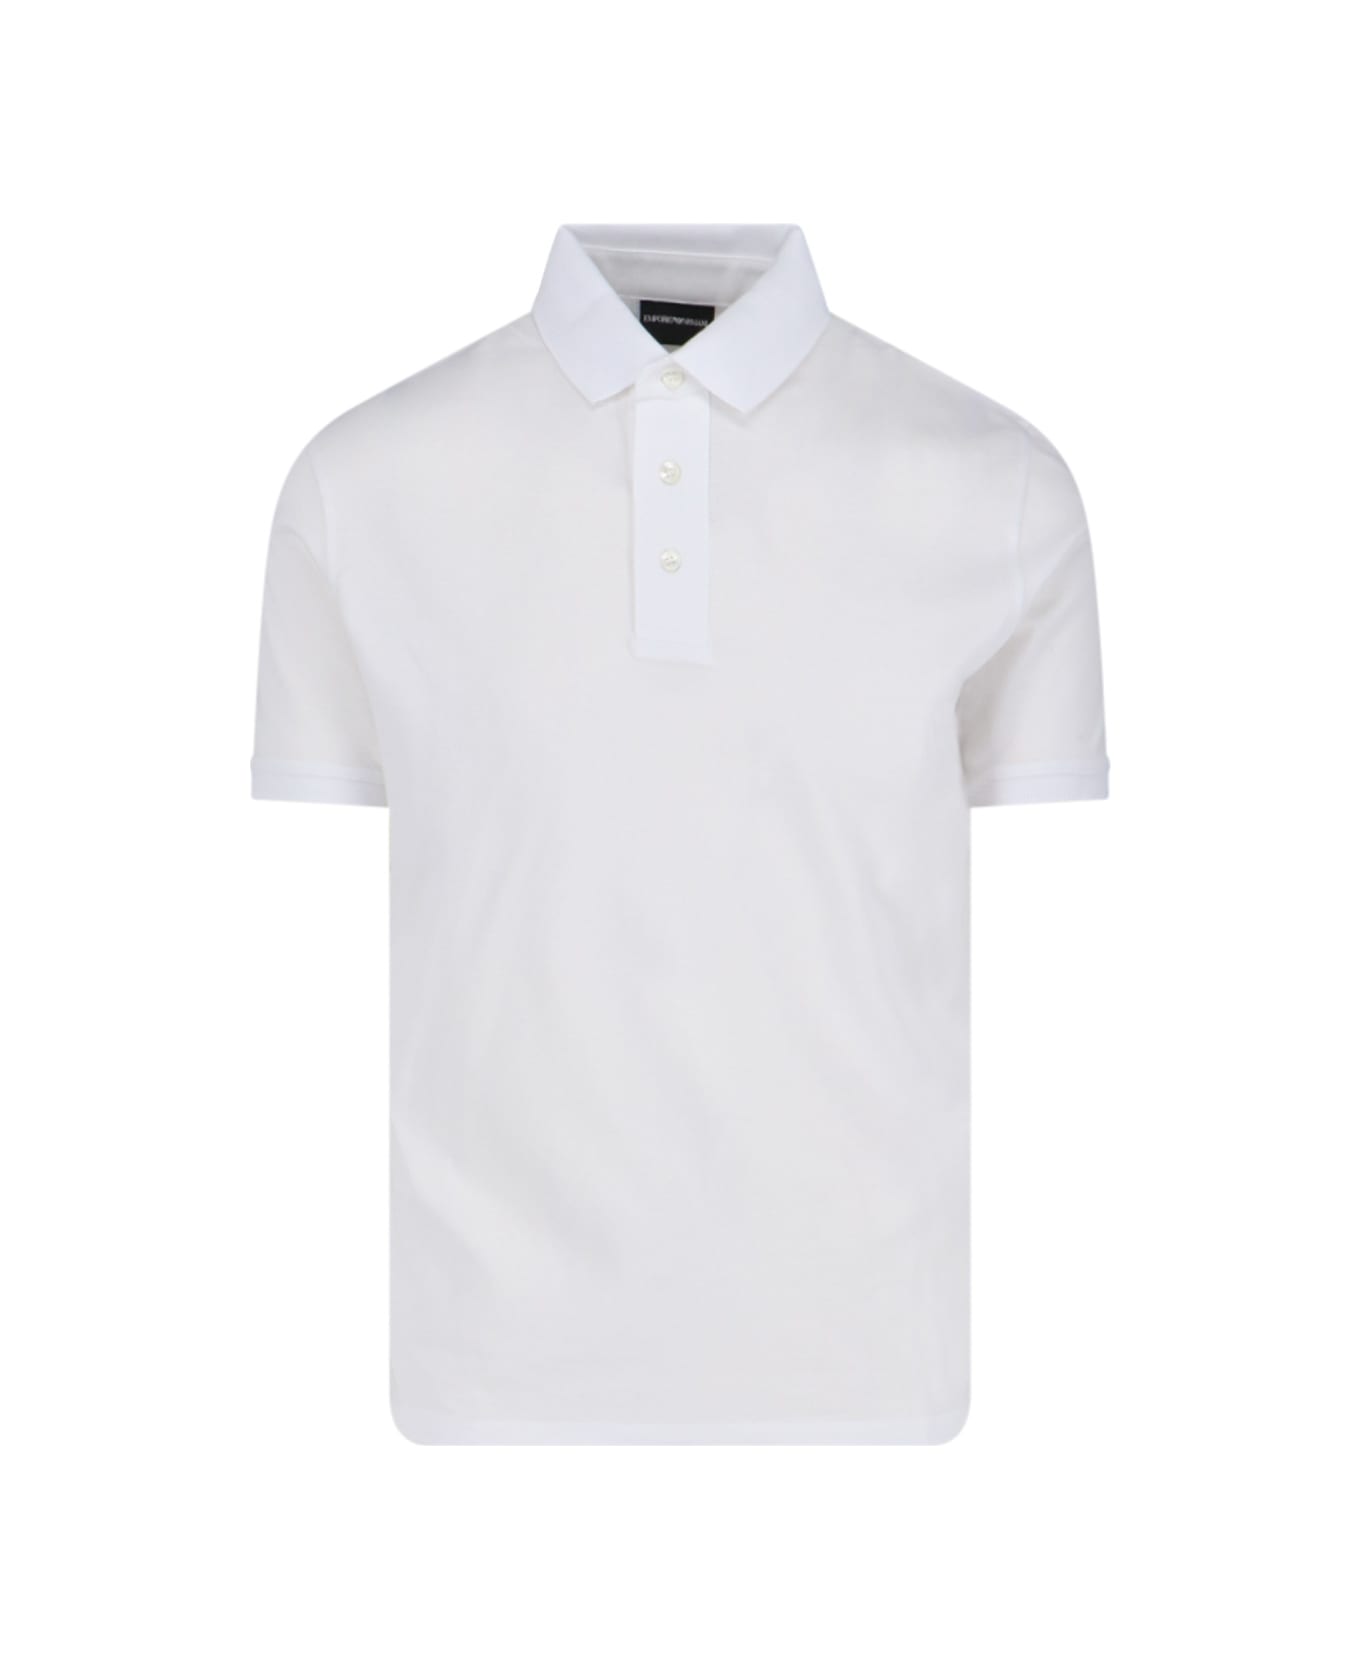 Emporio Armani Basic Polo Shirt - White